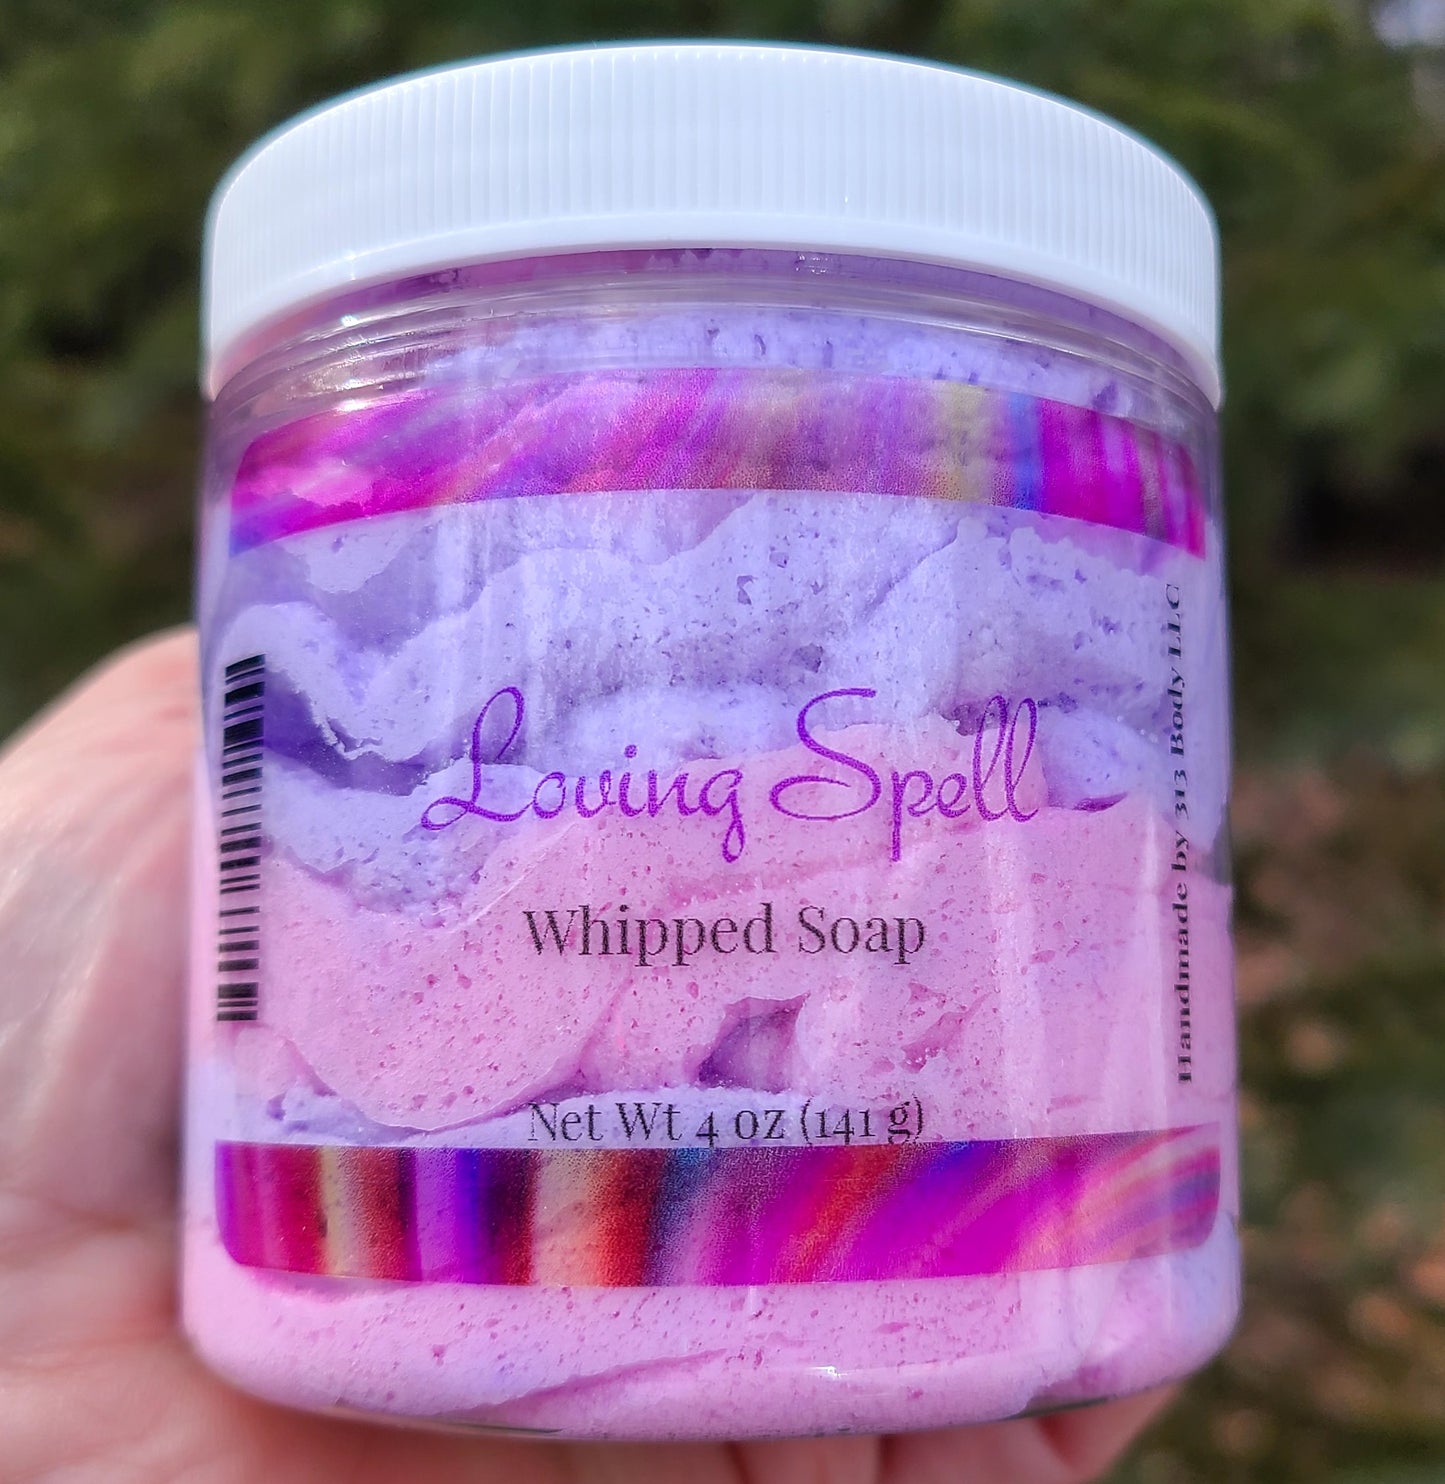 Loving Spell Whipped Soap